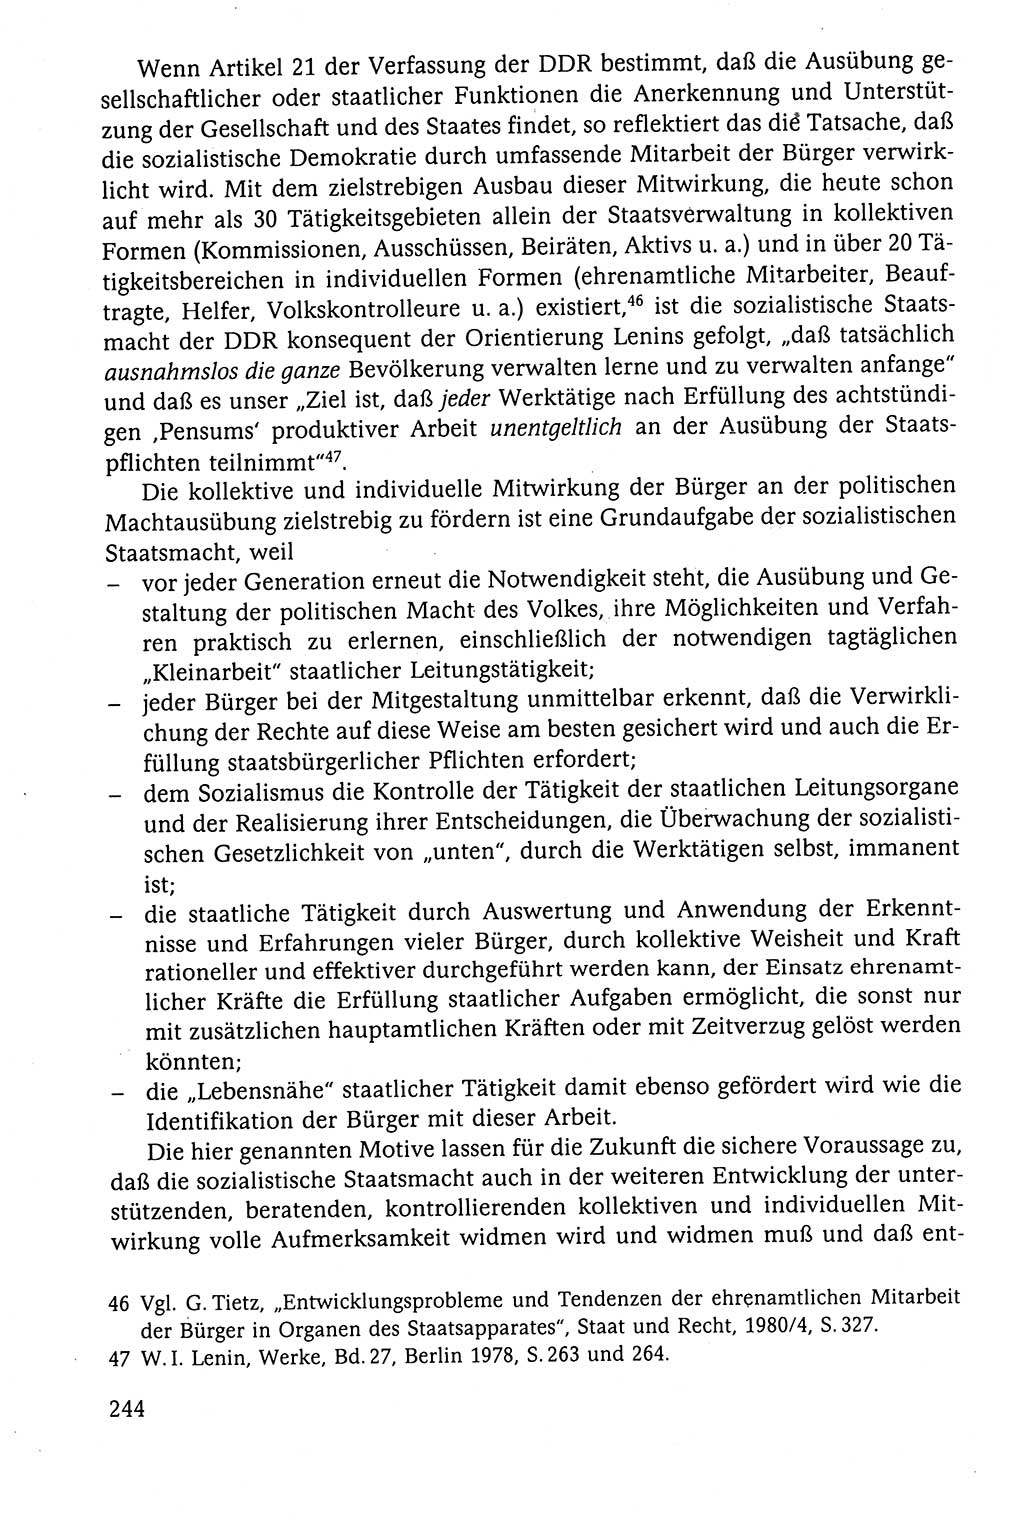 Der Staat im politischen System der DDR (Deutsche Demokratische Republik) 1986, Seite 244 (St. pol. Sys. DDR 1986, S. 244)